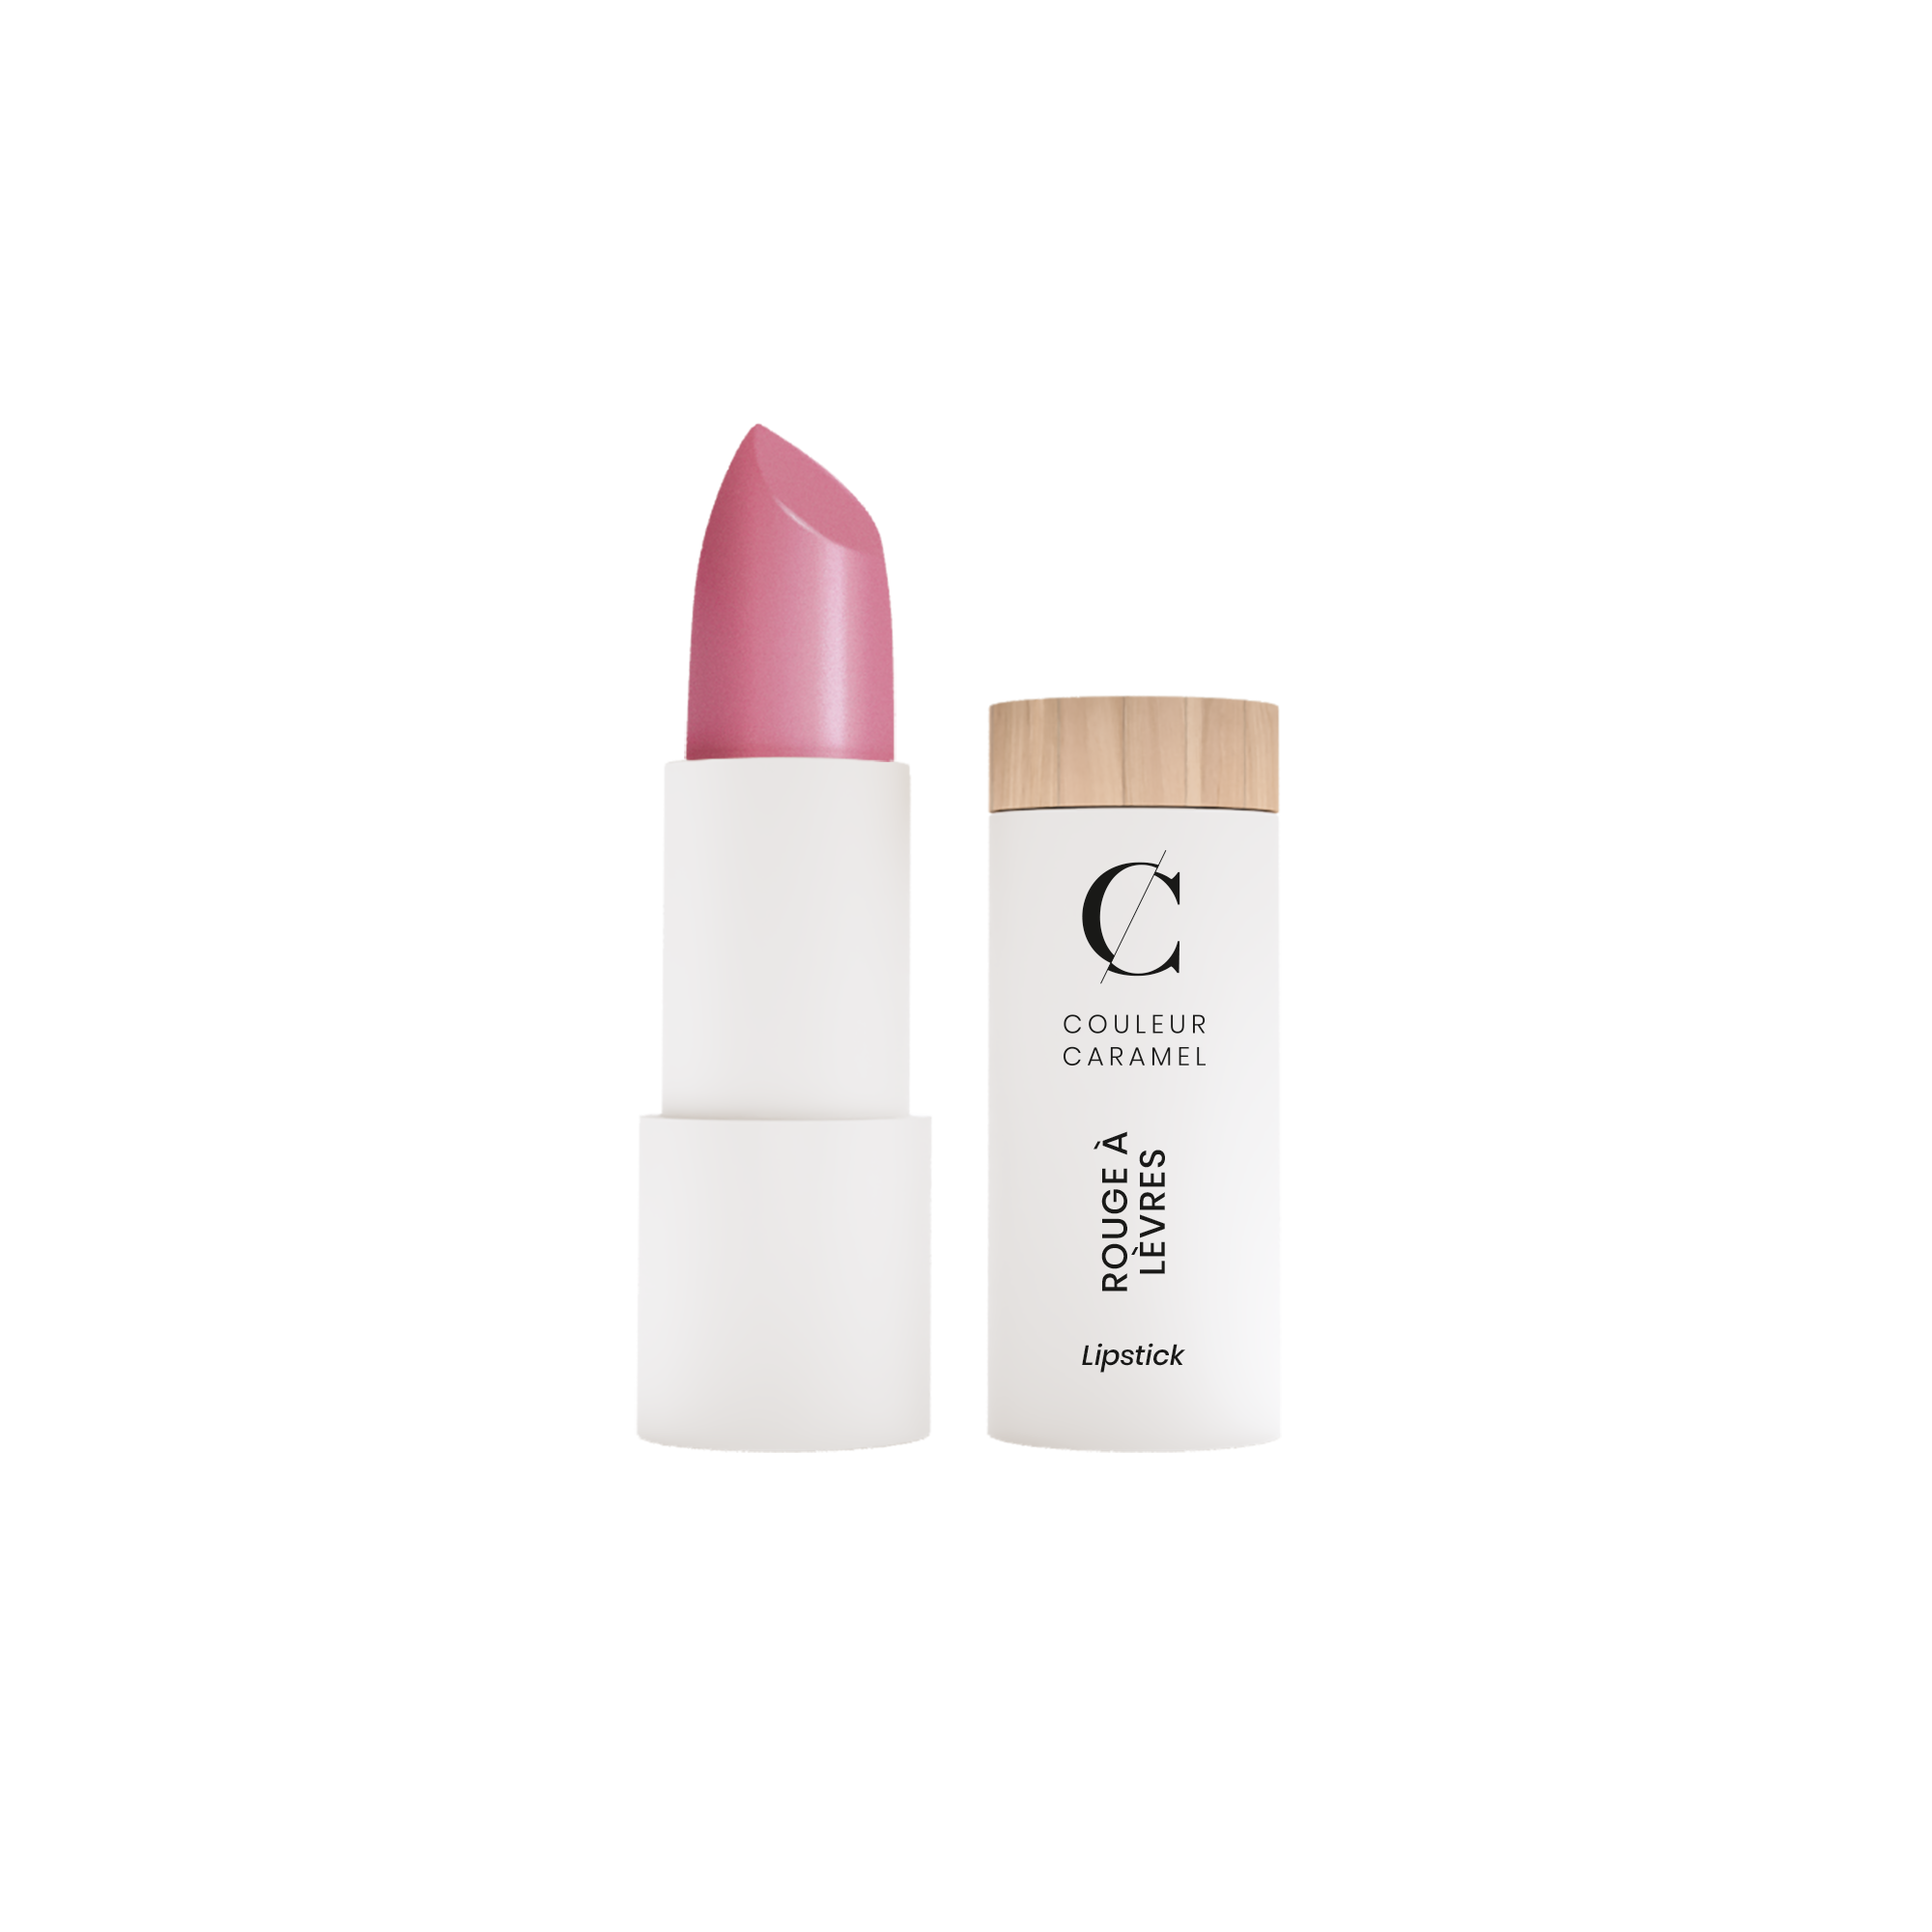 Beschrijving De verzorgende Bio Lipsticks van Couleur Caramel beschermen, verzachten en houden lang.